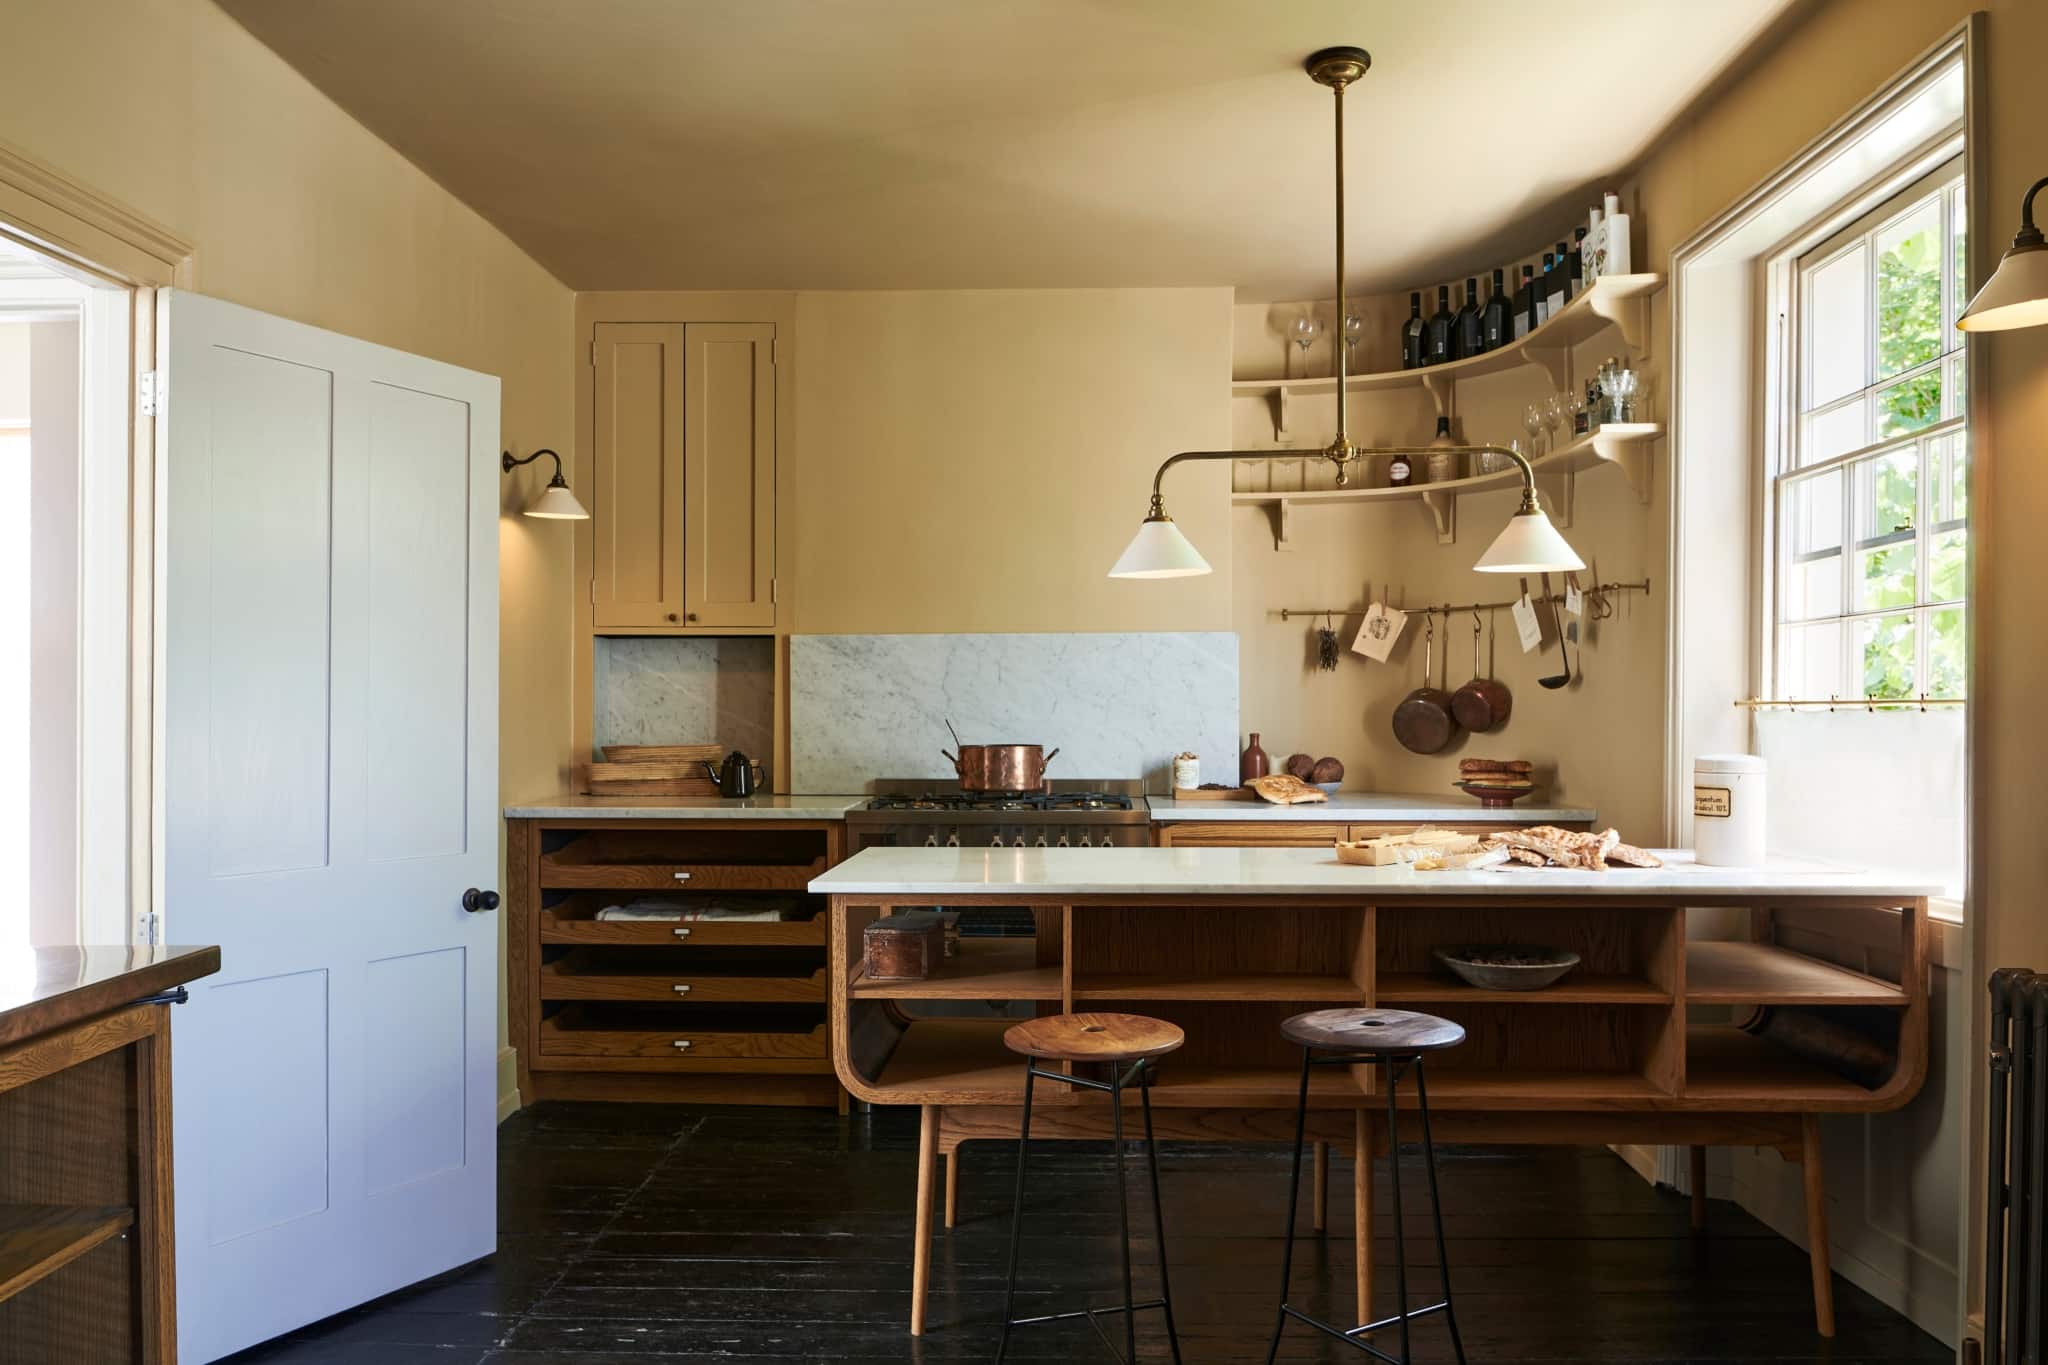 dreamy deVOL bespoke kitchen - kitchen design - design remodel - kitchen island